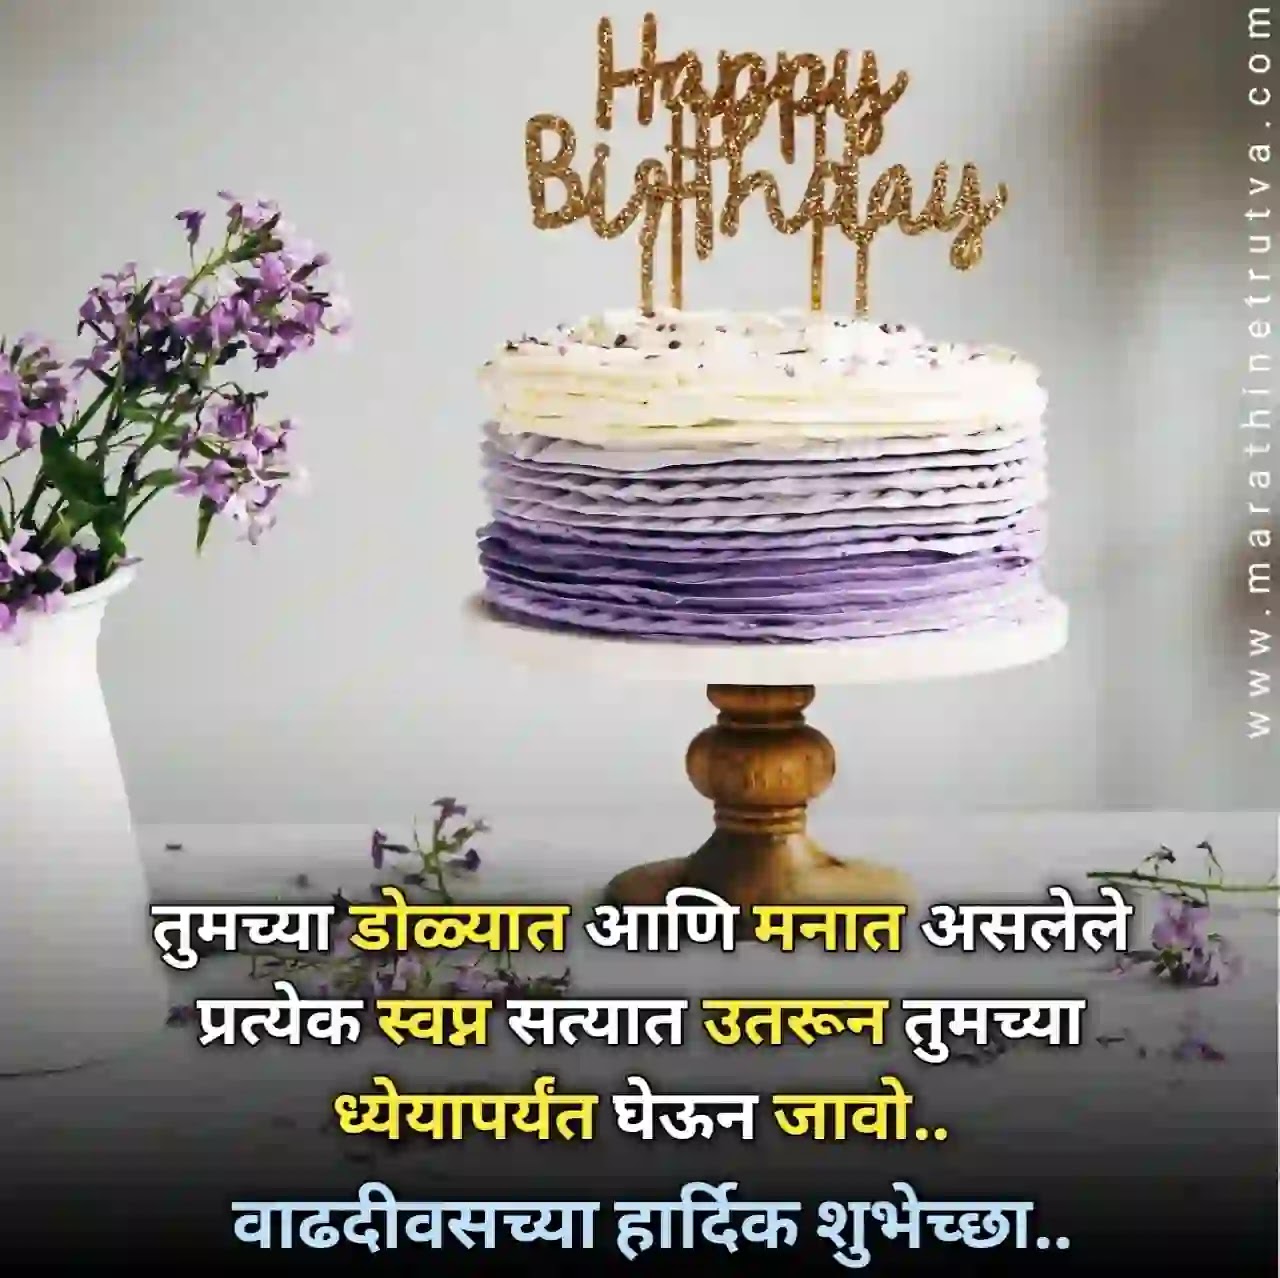 Funny-birthday-wishes-in-Marathi